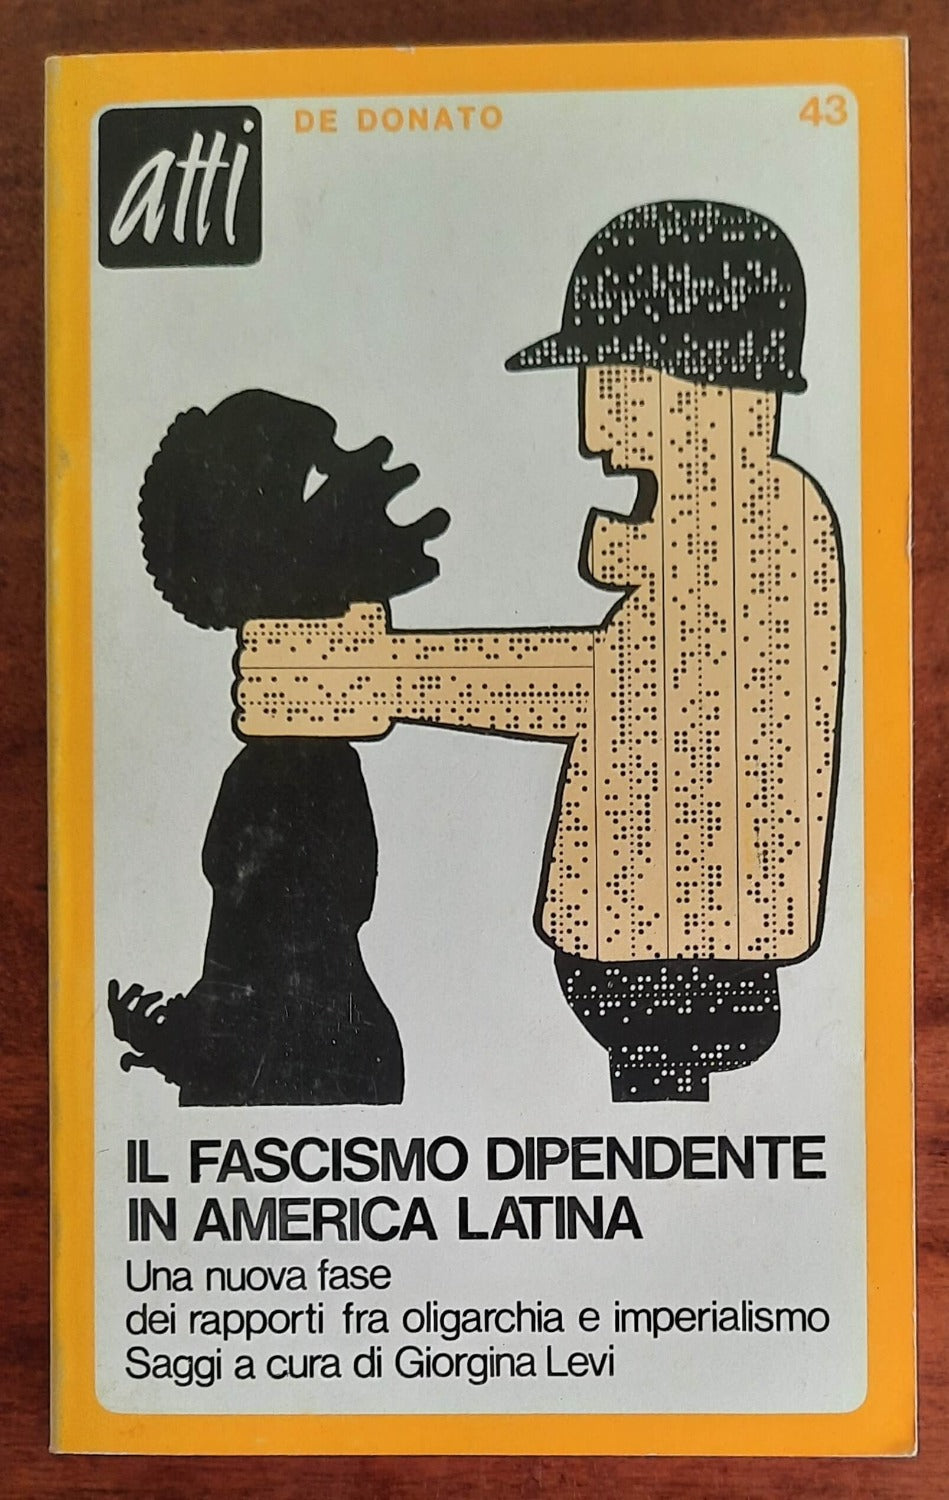 Il fascismo dipendente in America Latina - De Donato Editore - 1976